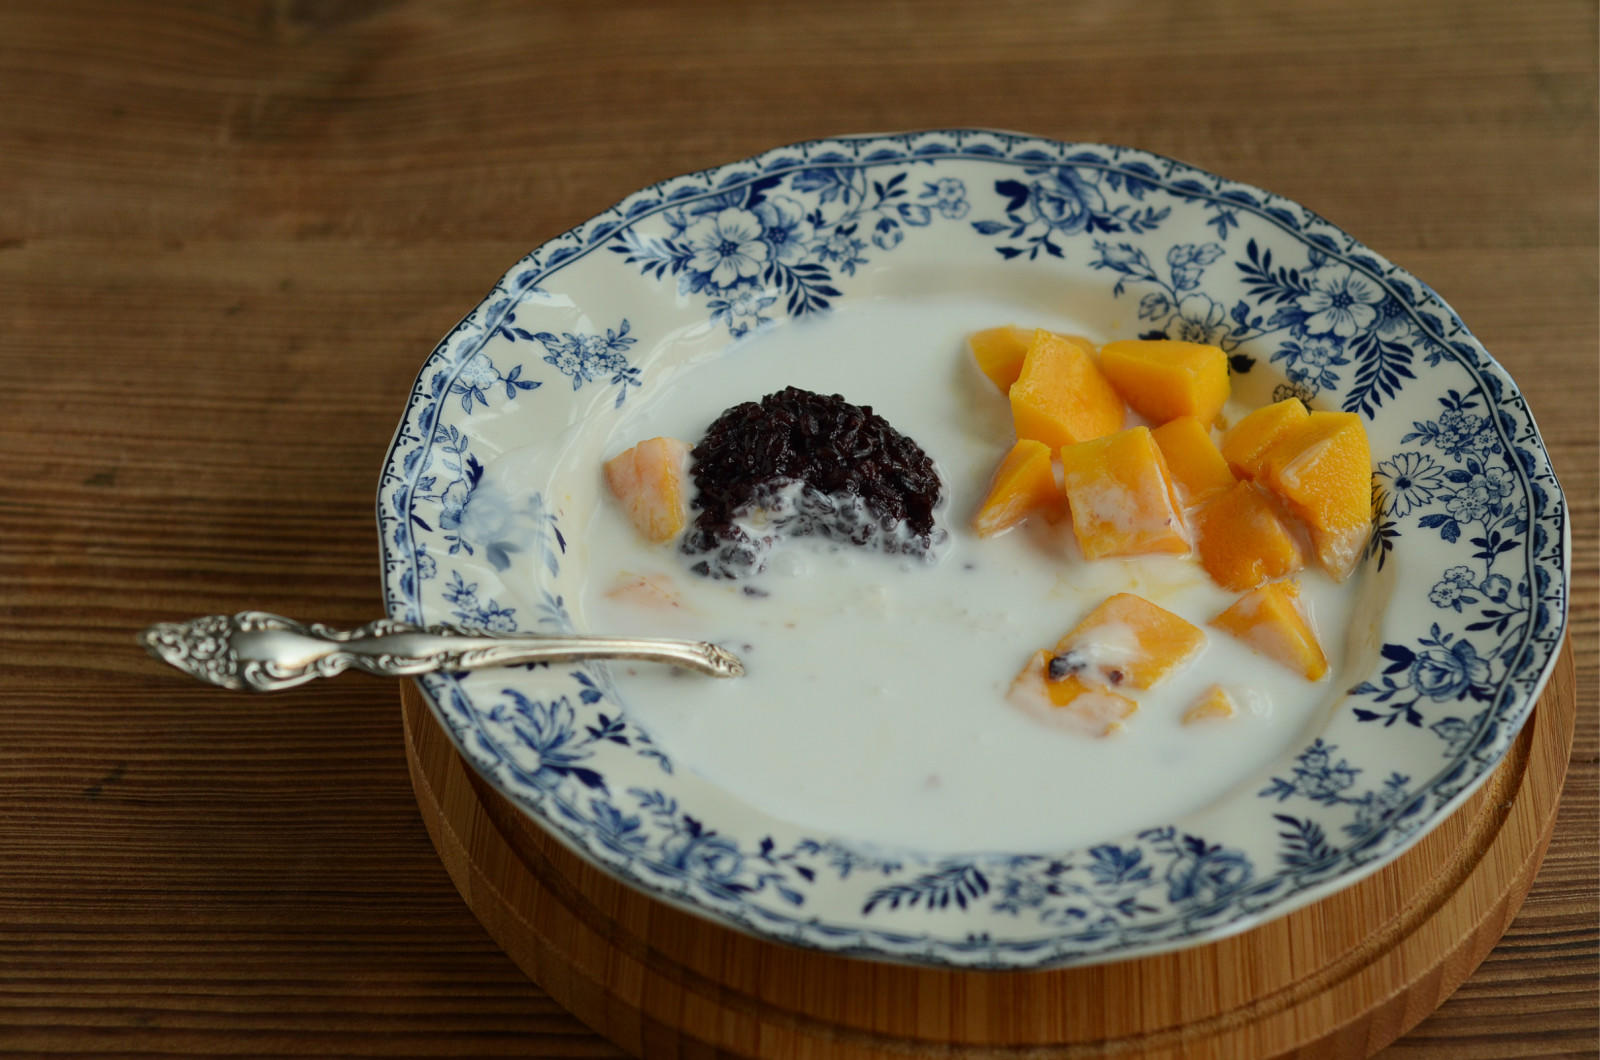 经典港式甜品——芒果黑米捞的做法